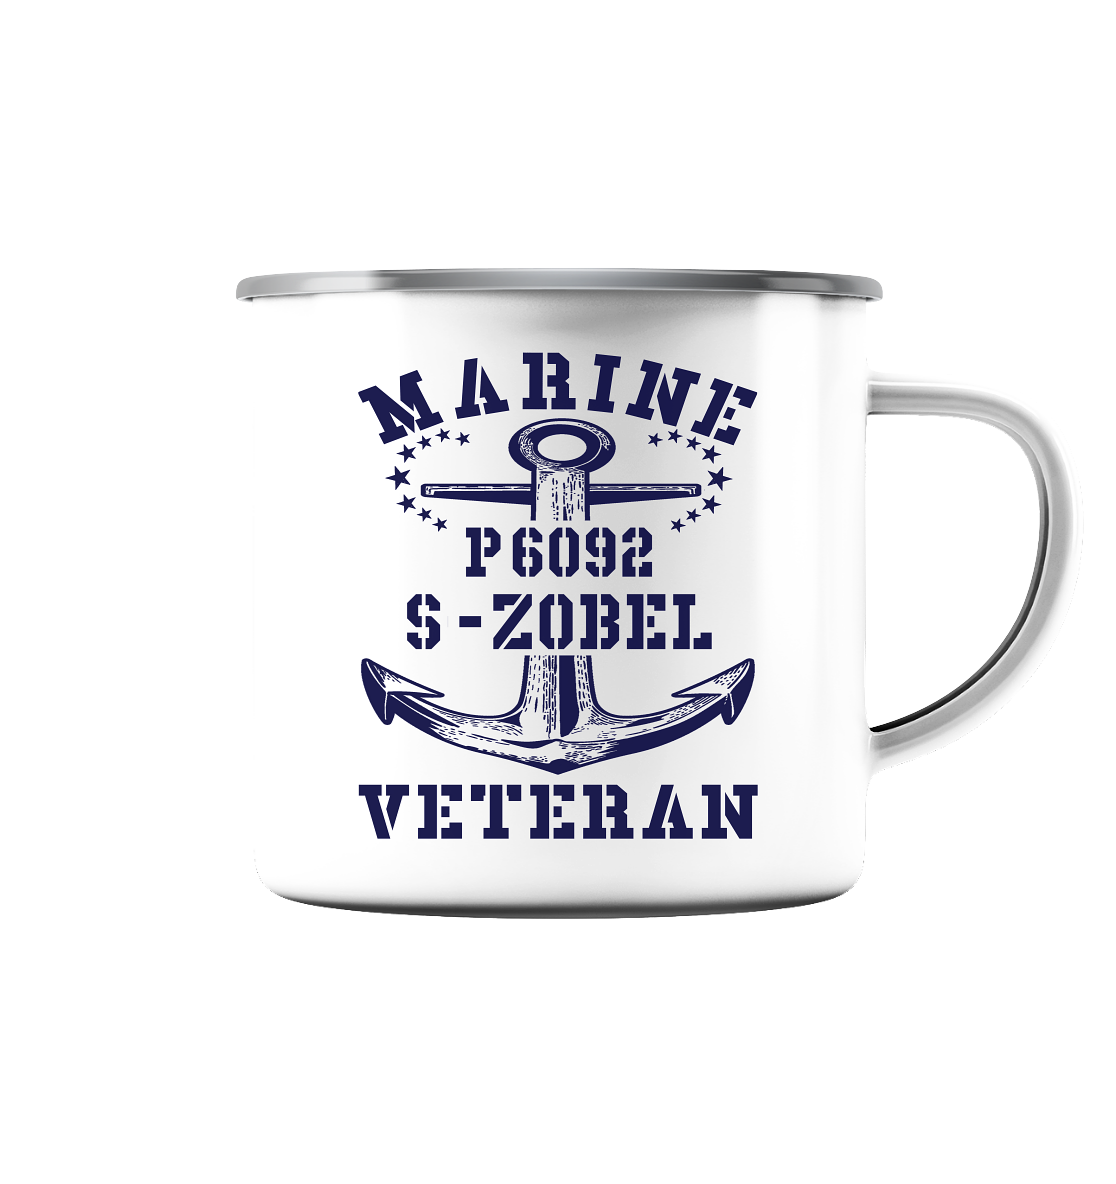 P6092 S-ZOBEL Marine Veteran - Emaille Tasse (Silber)